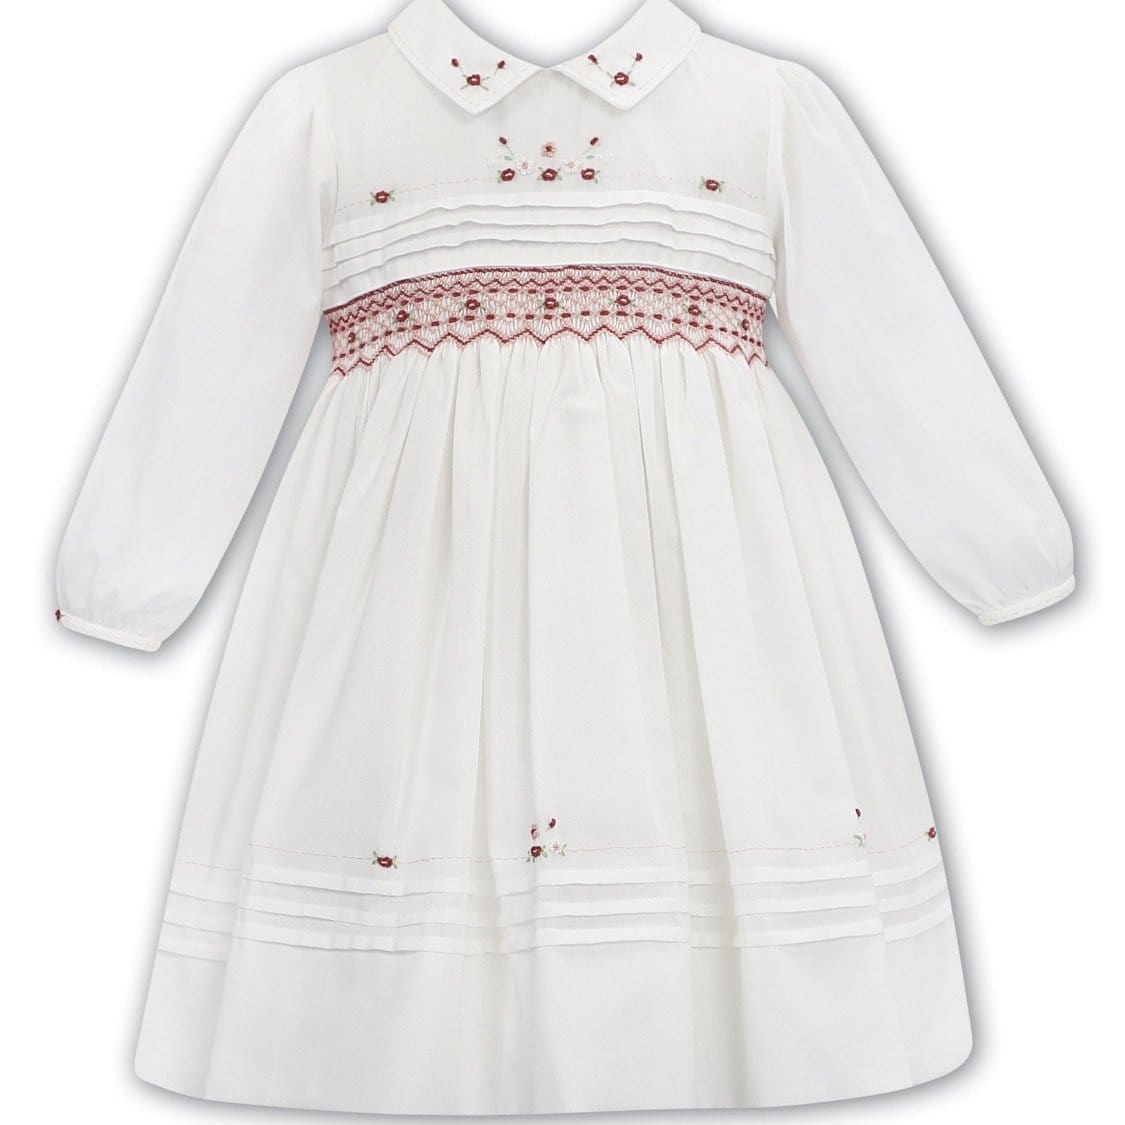 SARAH LOUISE WHITE / RED SMOCKED DRESS WINTER